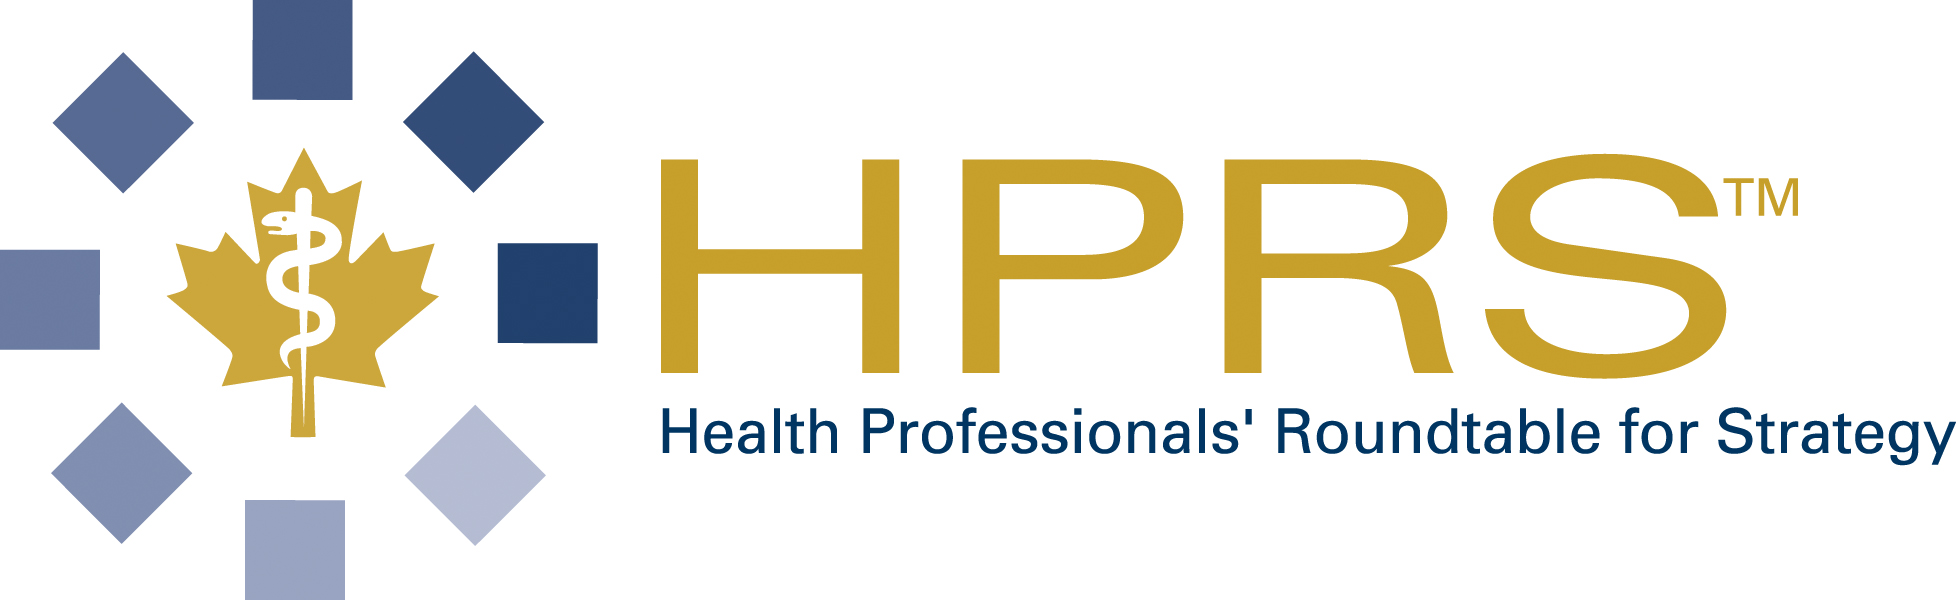 HPRS logo